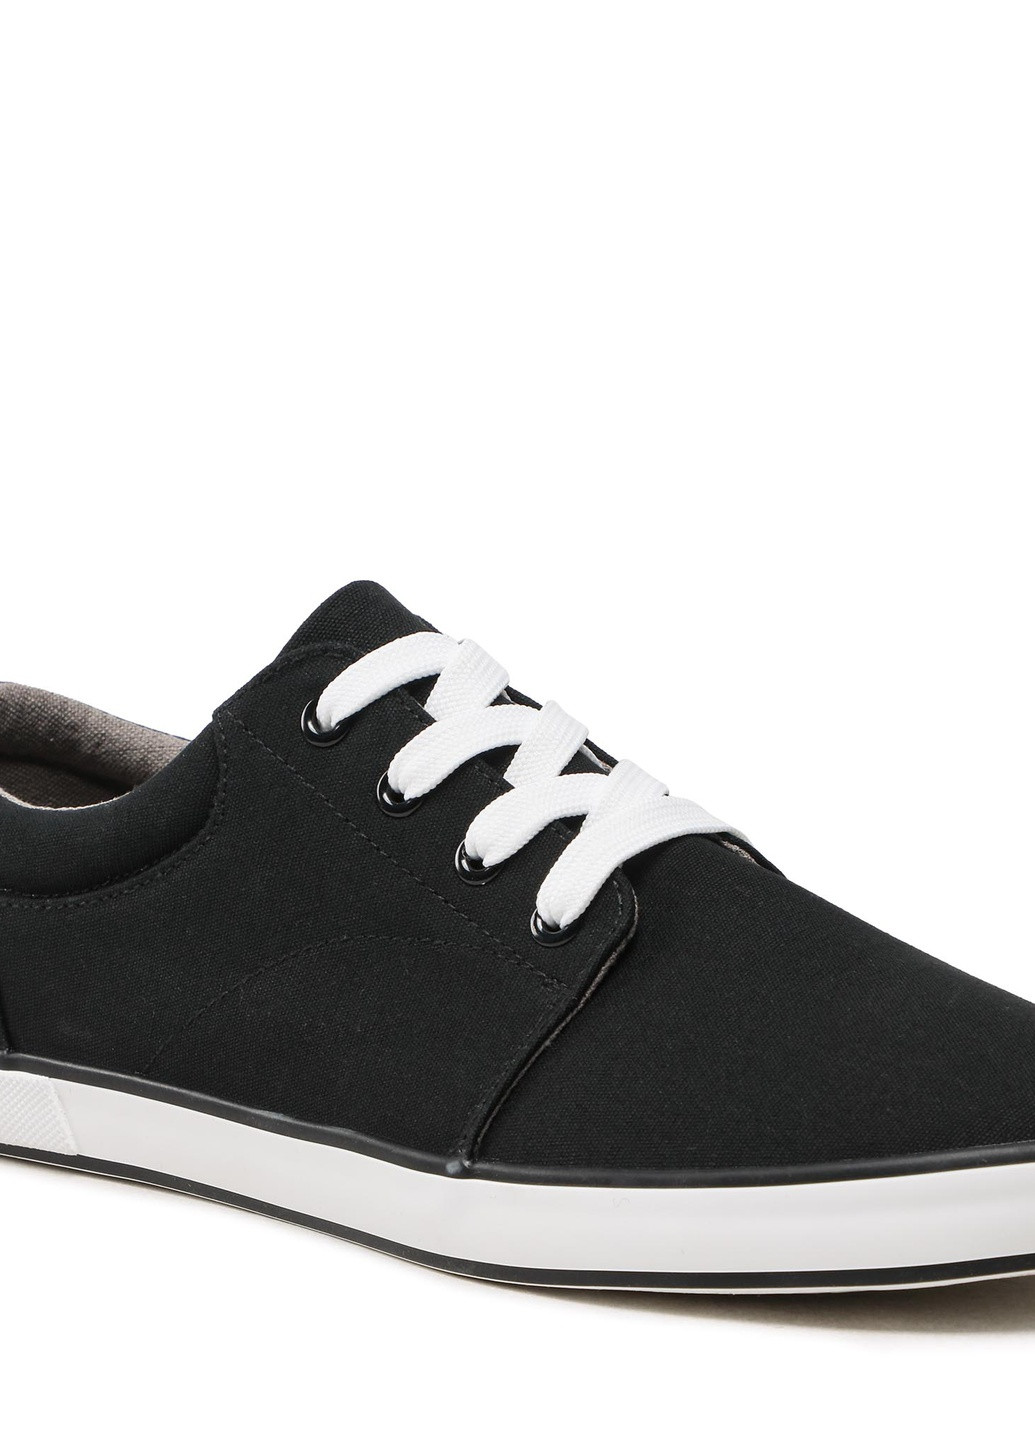 Черные демисезонные кросівки ms20347-11 Lanetti